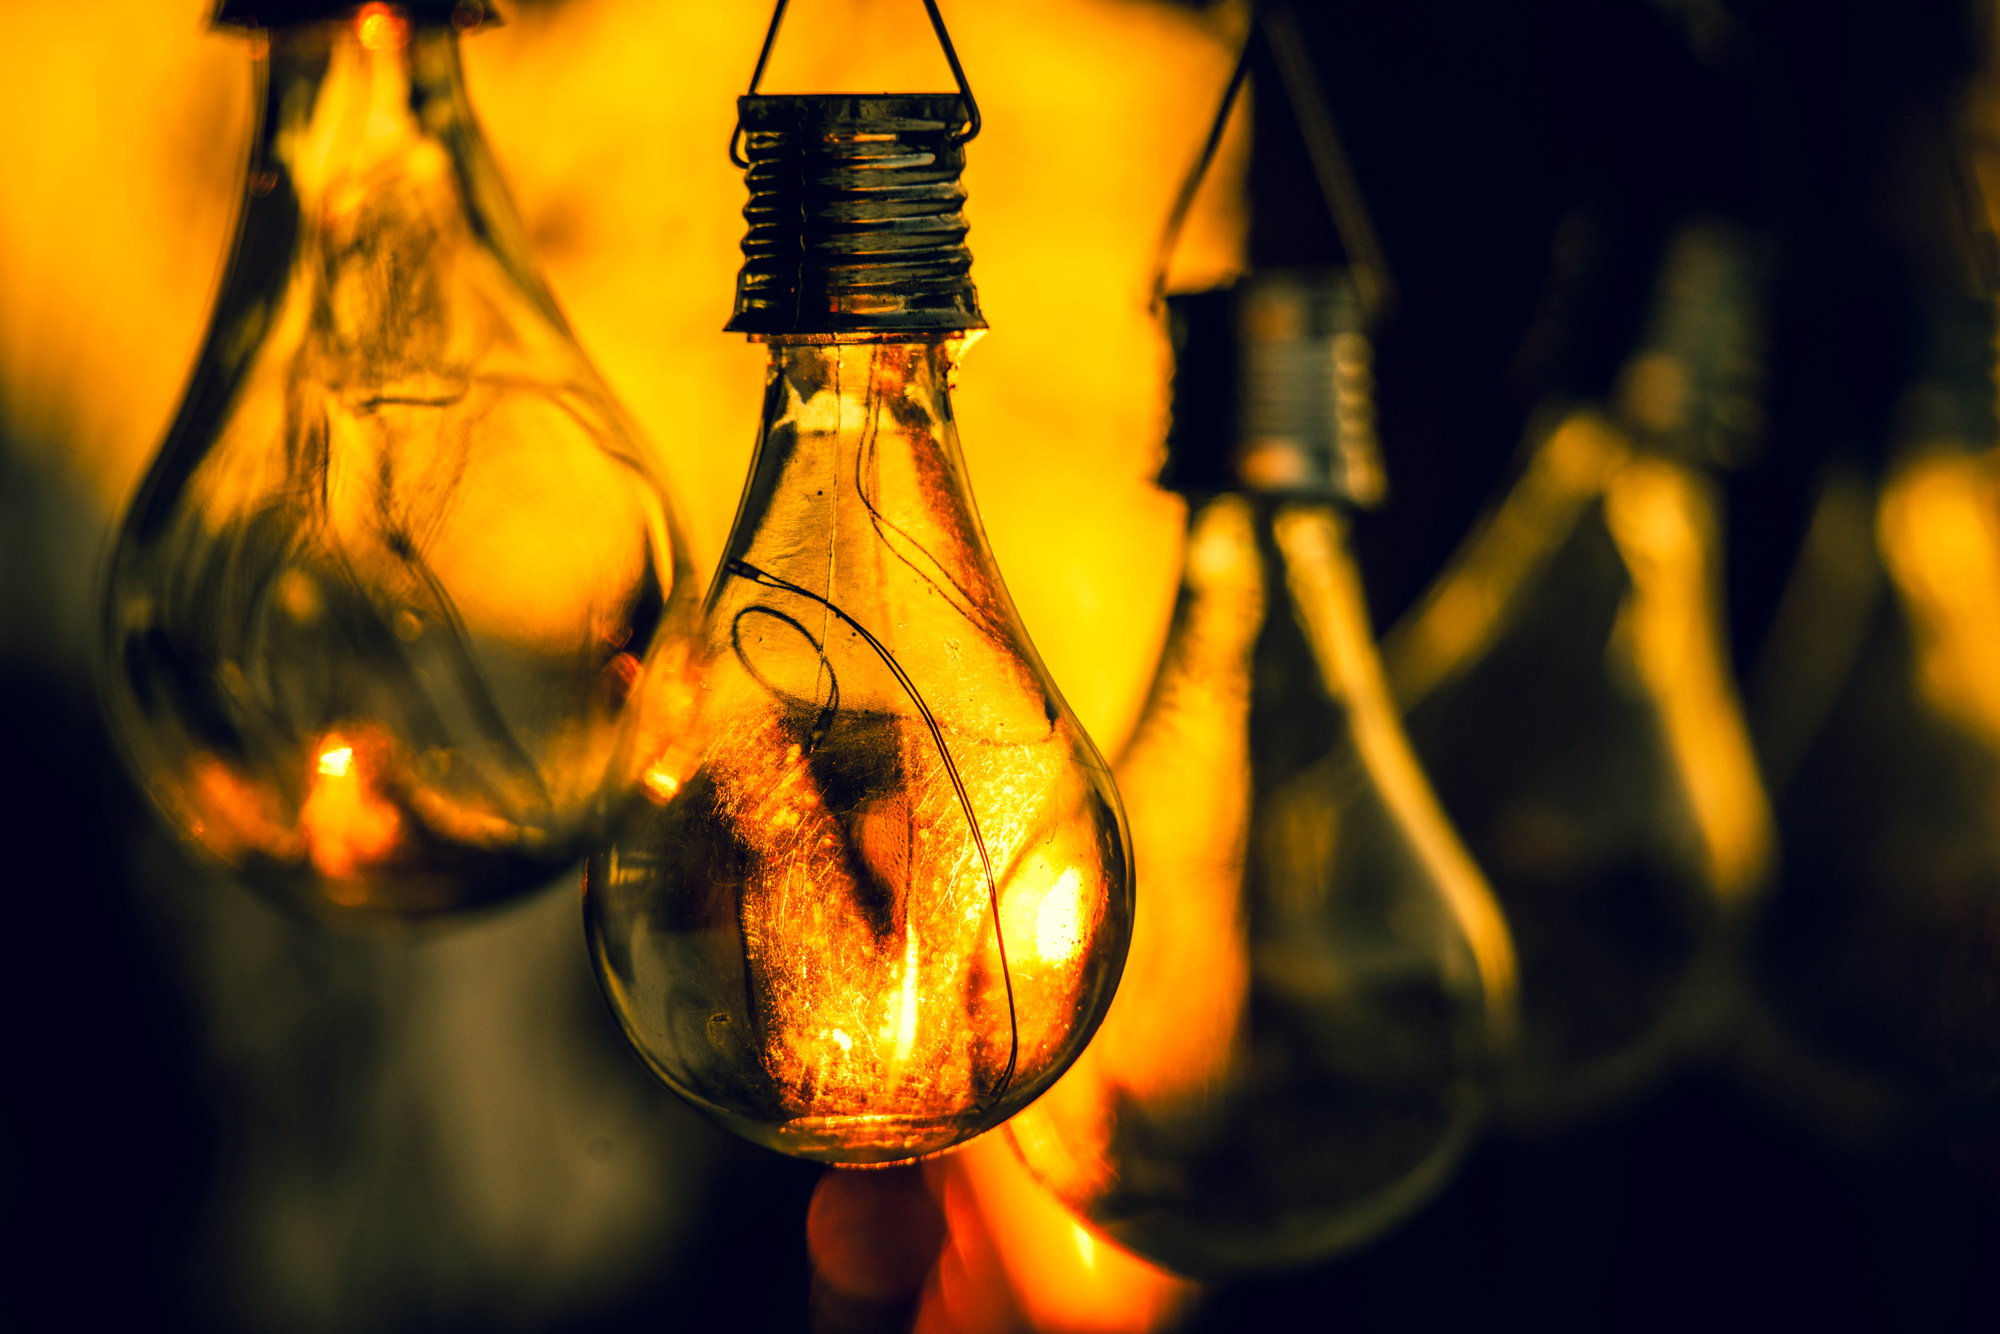 Lightbulbs by Roger Carlsen